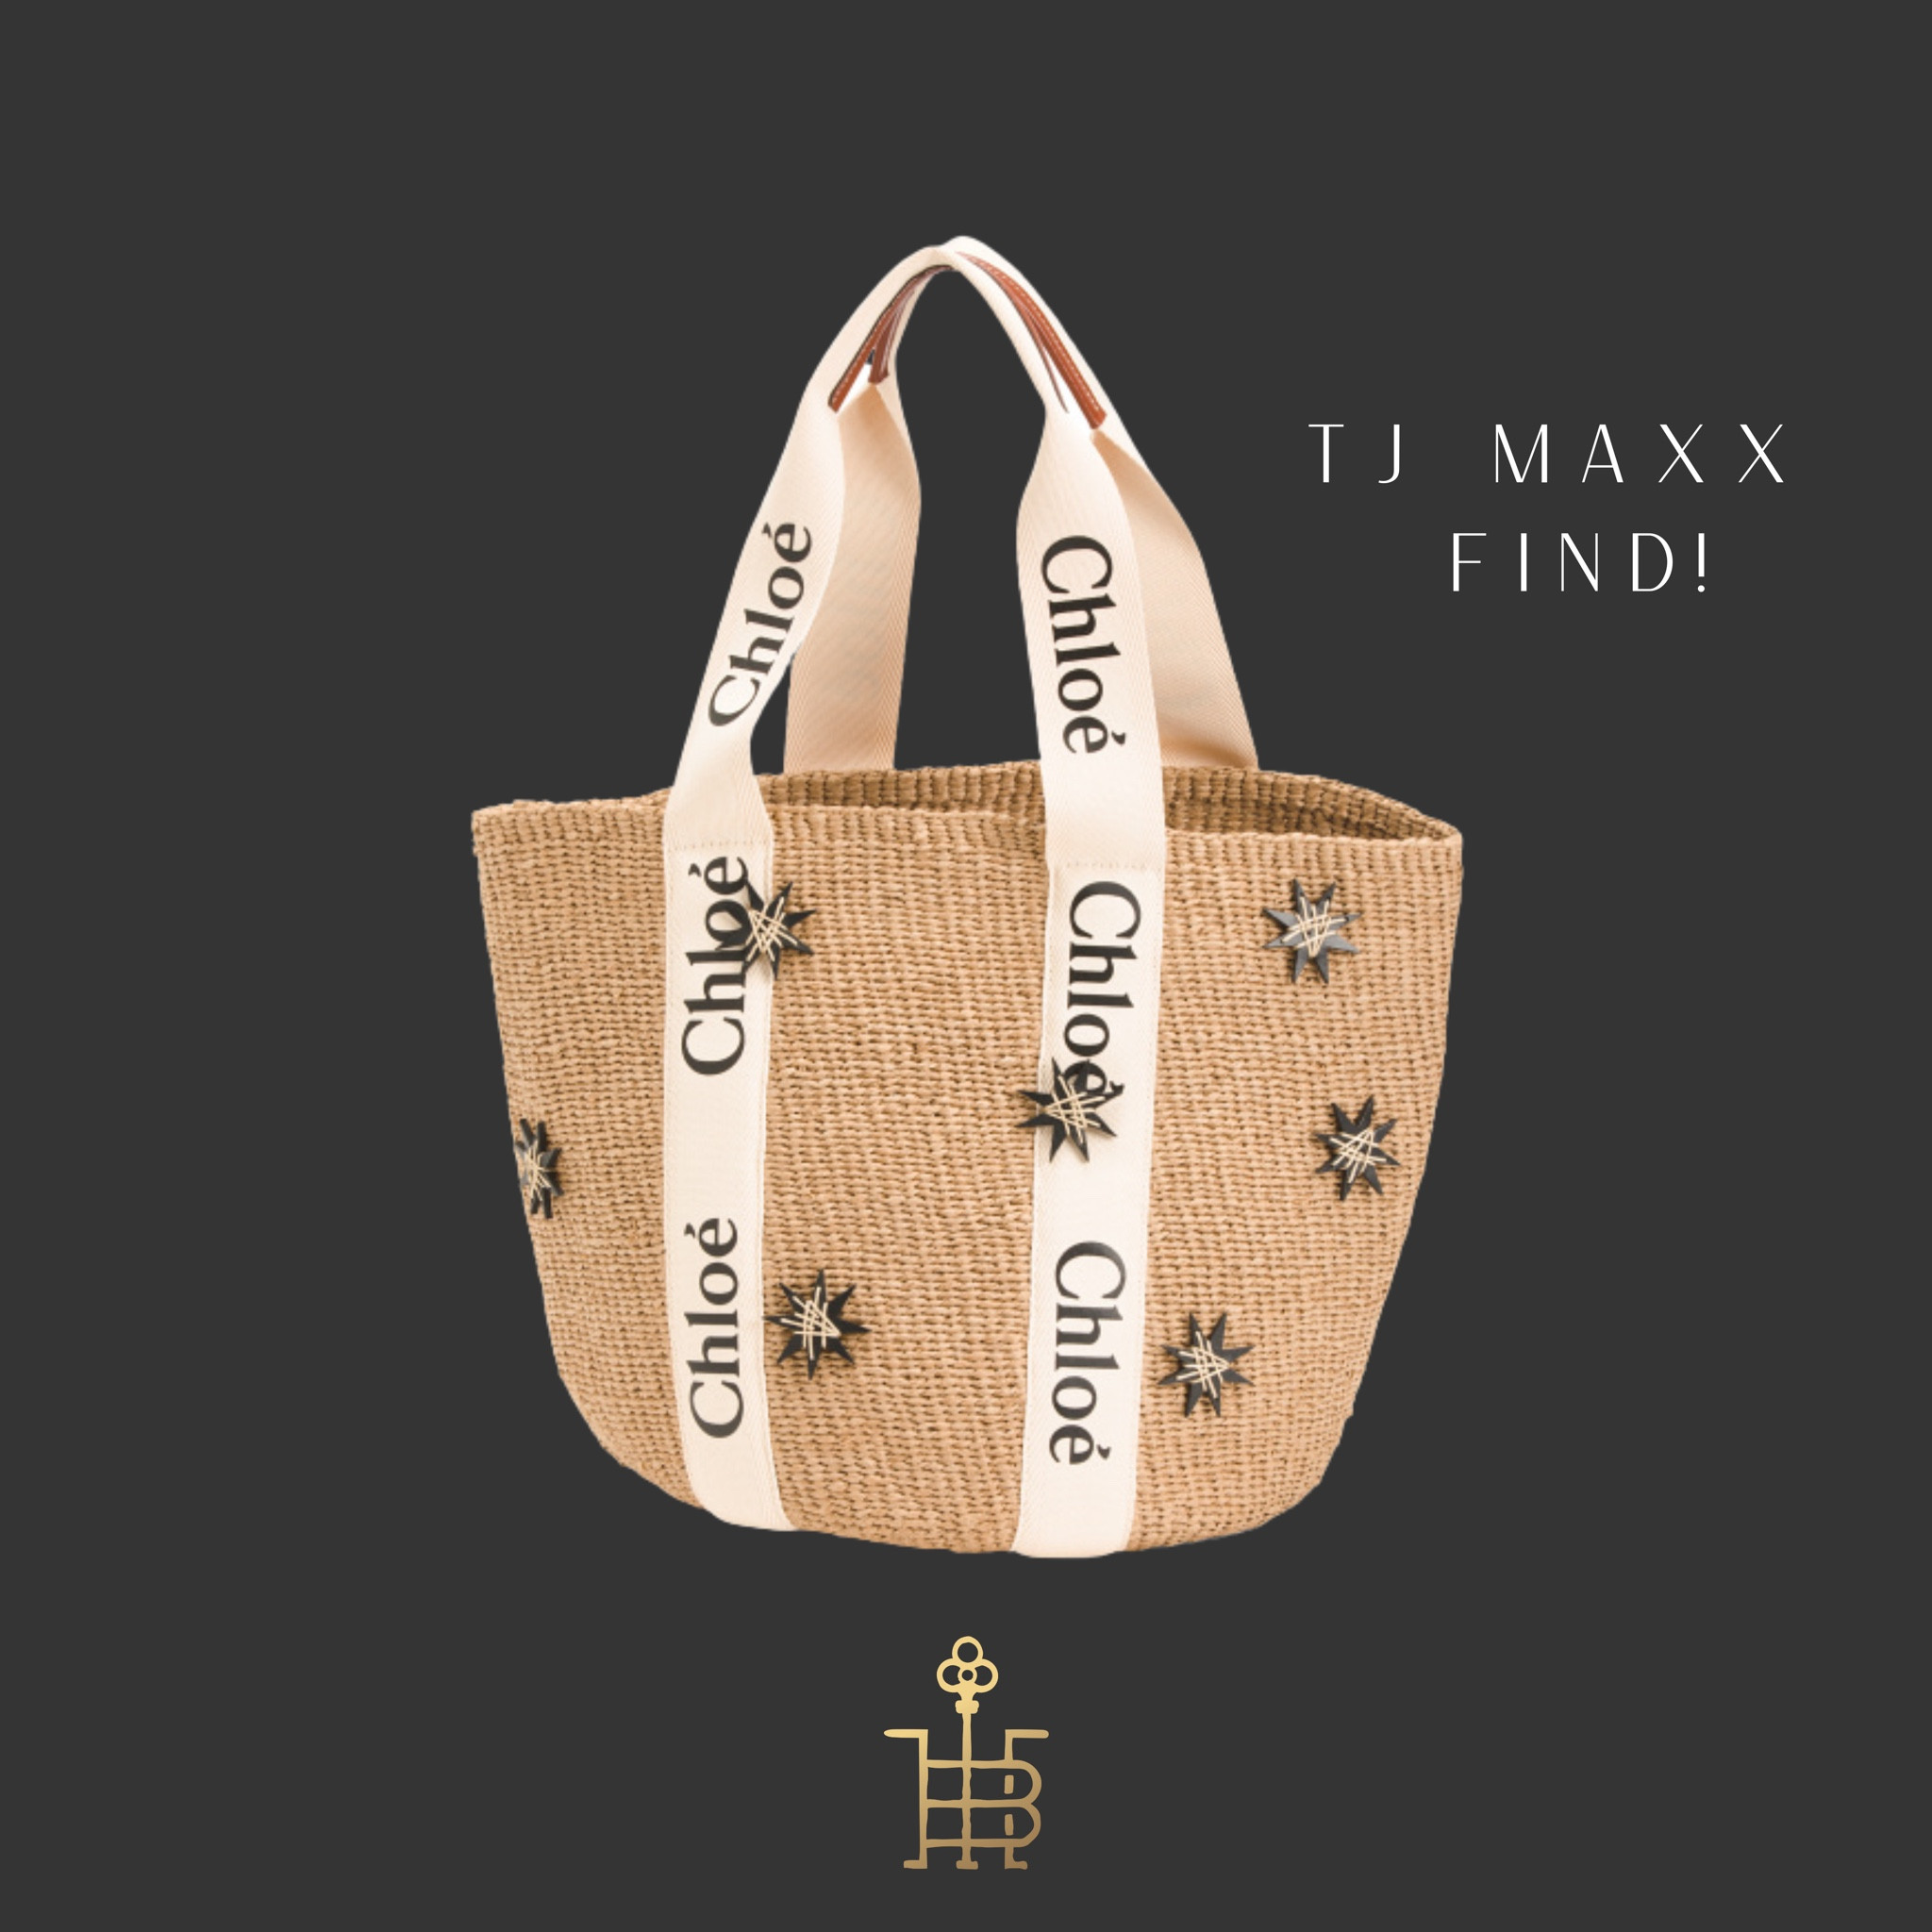 tj maxx shopping bags